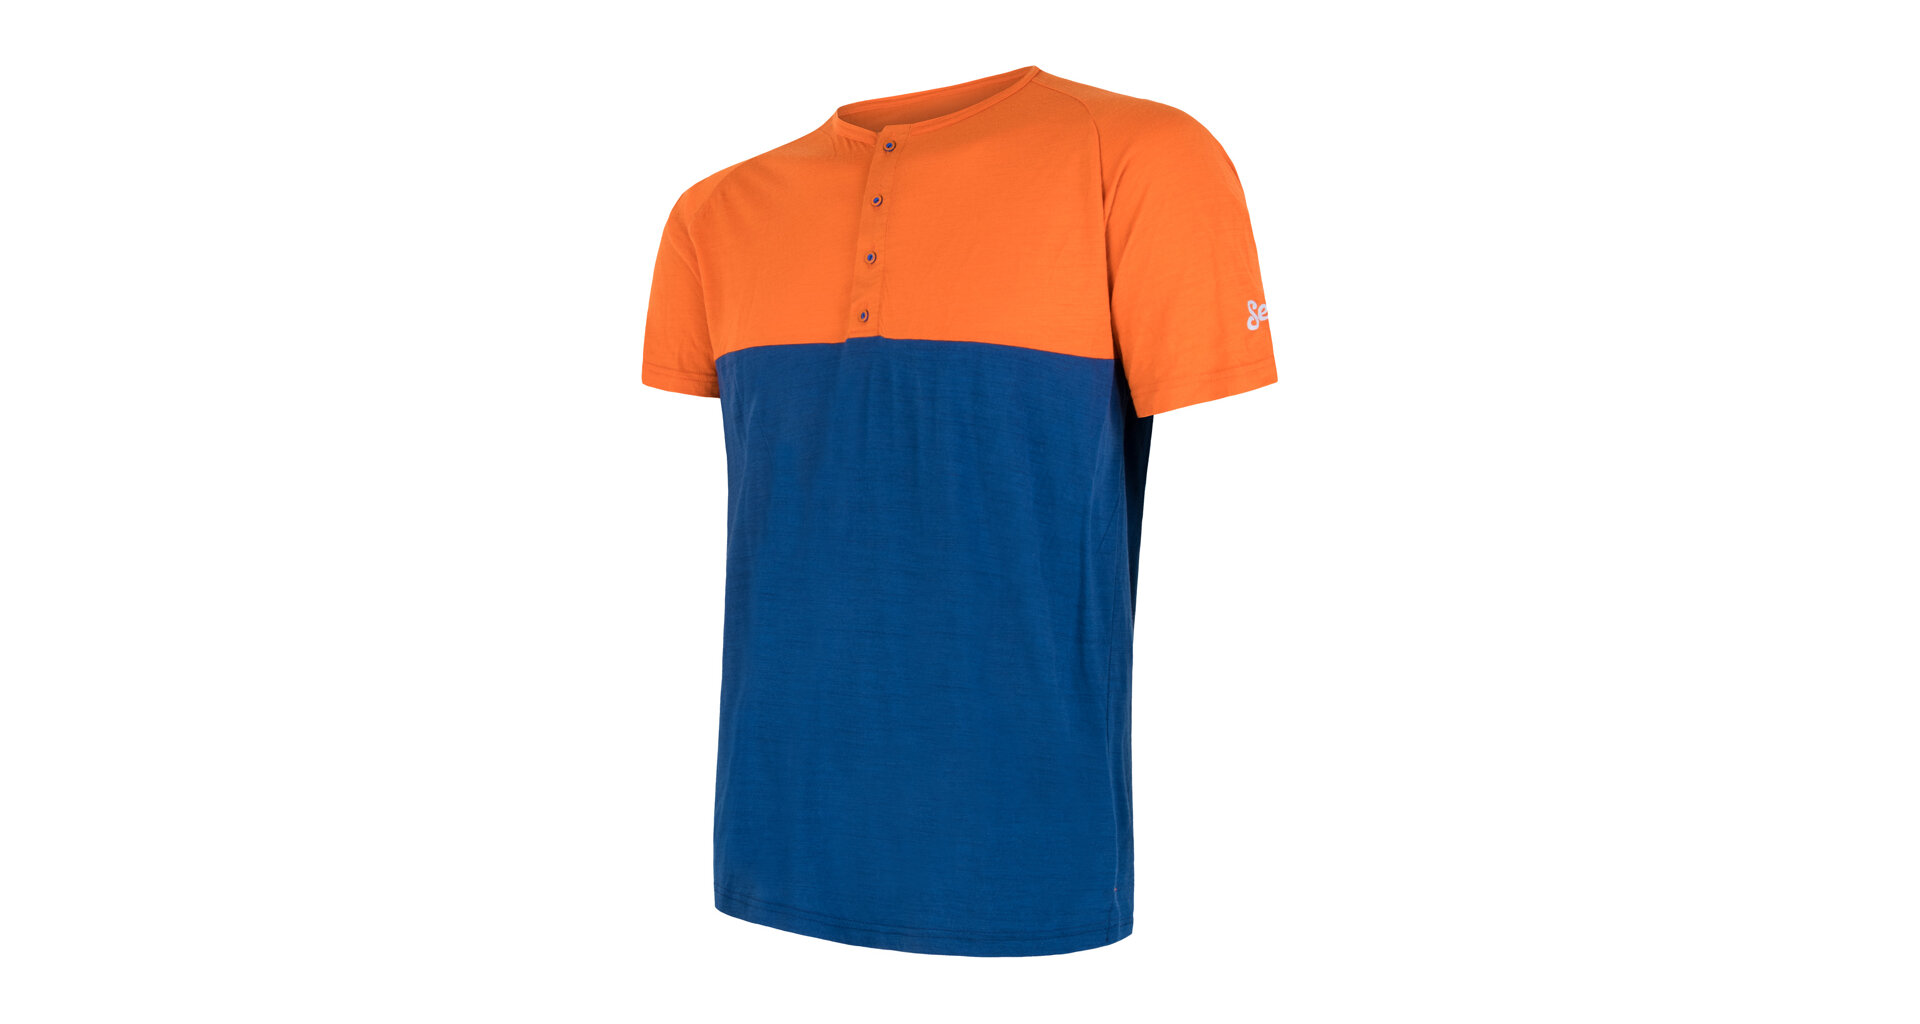 SENSOR MERINO AIR PT pánské triko kr.rukáv s knoflíky oranžová/modrá Velikost: M